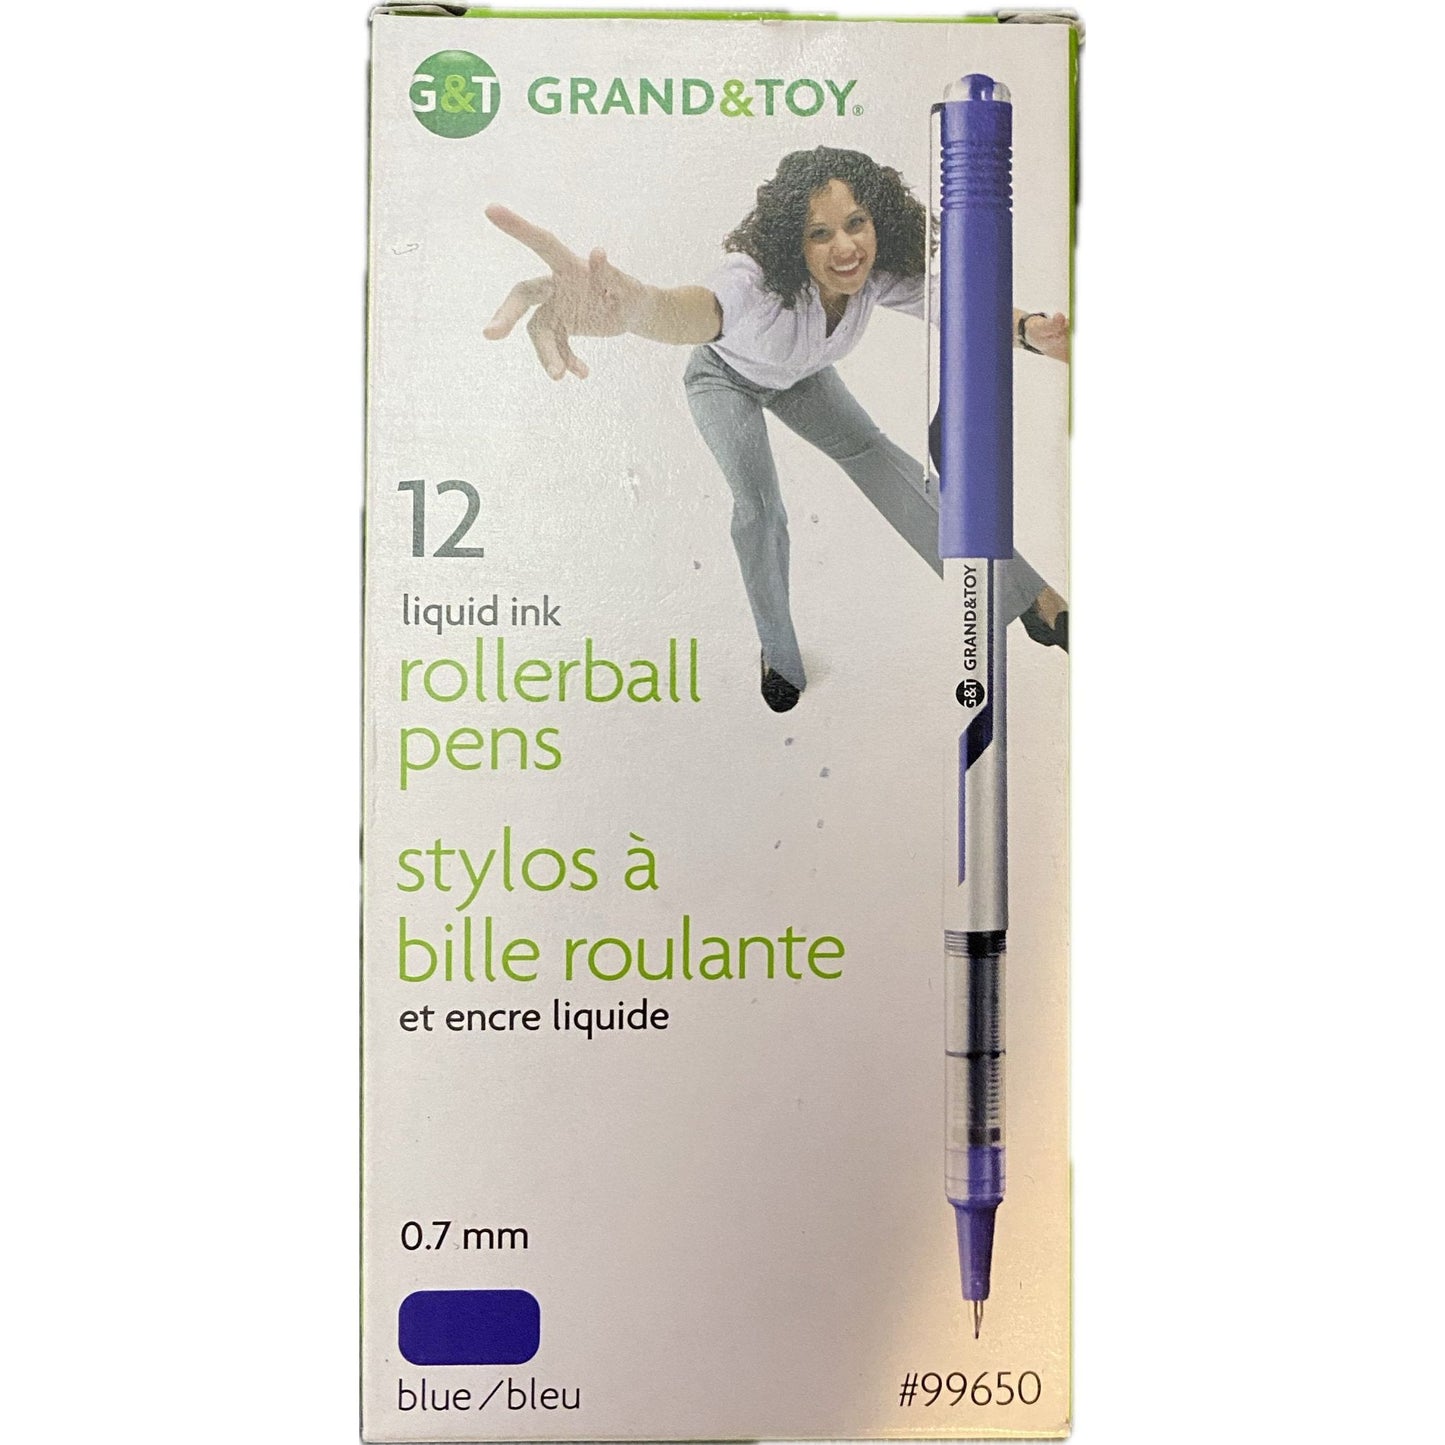 Grand & Toy Liquid Ink Rollerball Pens 12 pack, Blue Pens - Sabat Deals10055935996505